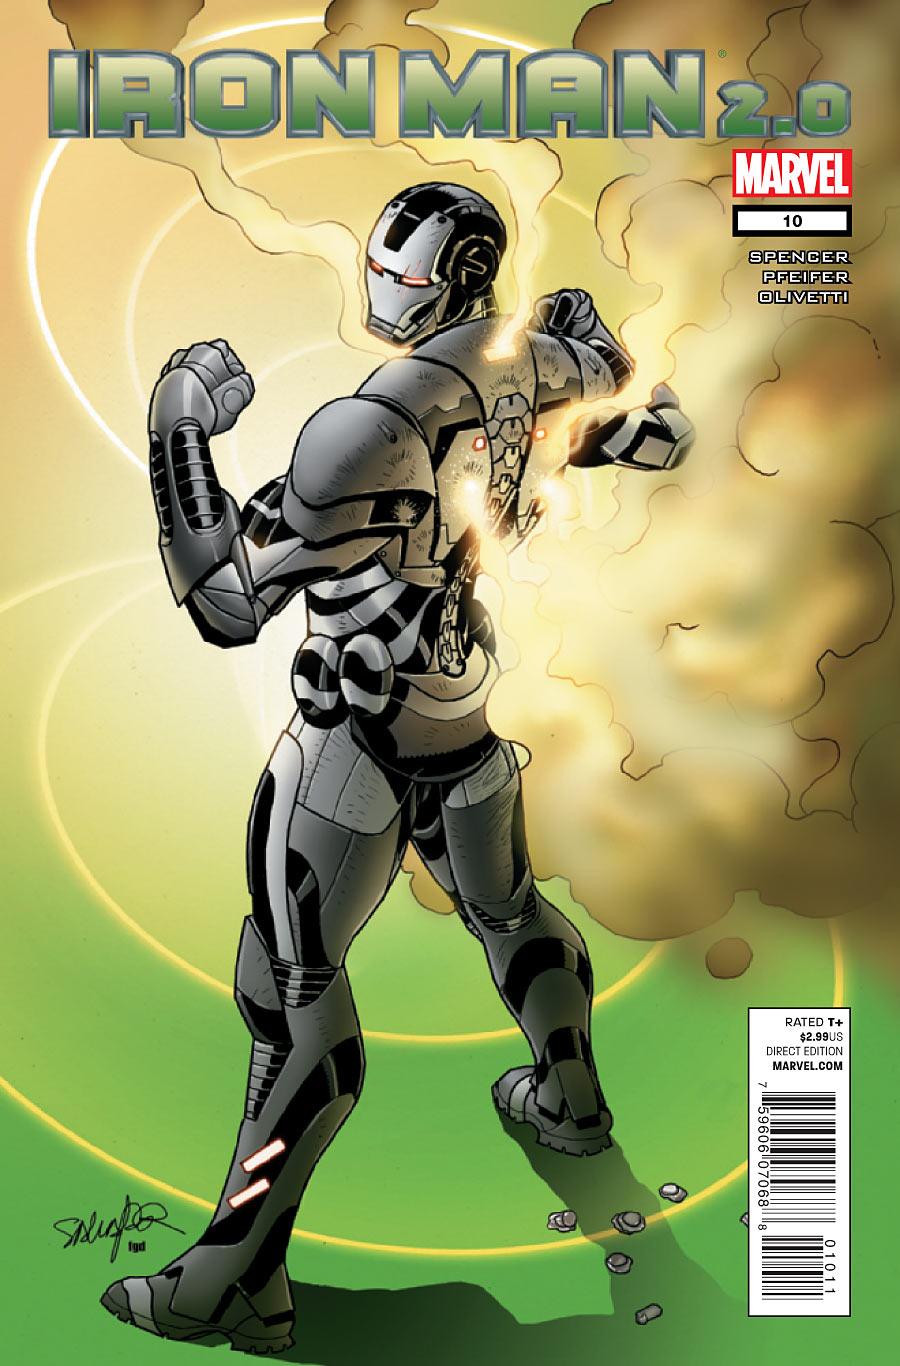 Iron Man 2.0 Vol. 1 #10